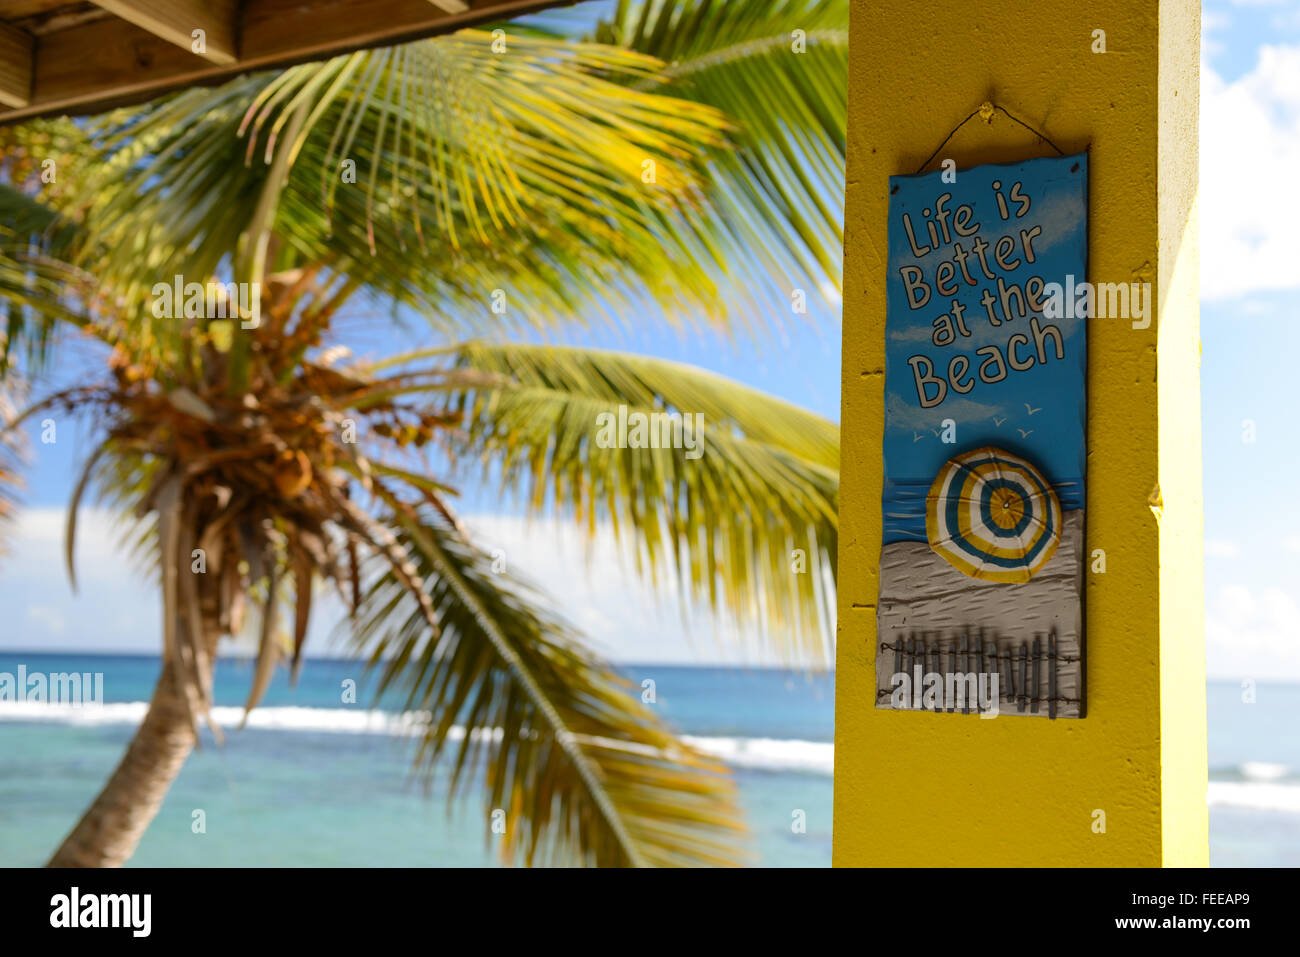 "Das Leben ist besser am Strand" Schild hängen in einem lokalen Restaurant. Patillas, Puerto Rico. Karibik-Insel. US-Territorium. Stockfoto